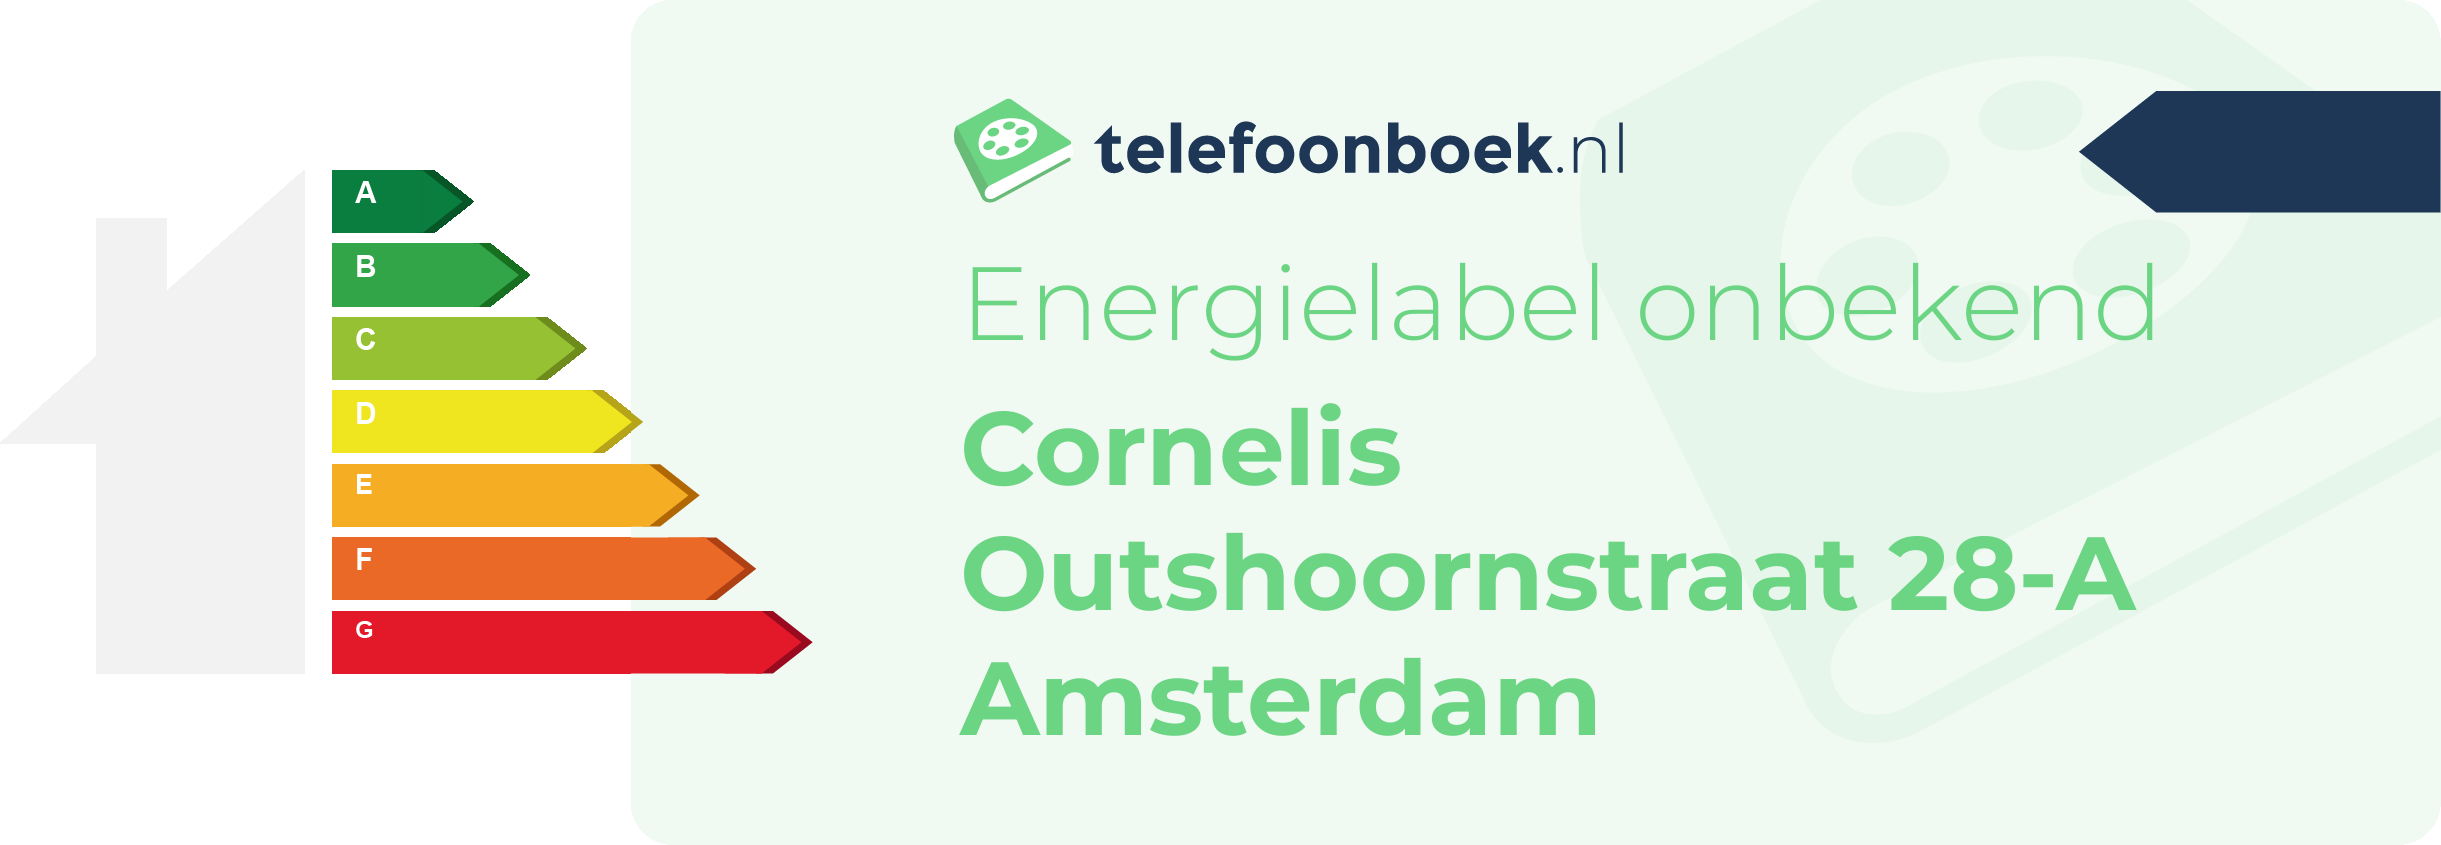 Energielabel Cornelis Outshoornstraat 28-A Amsterdam